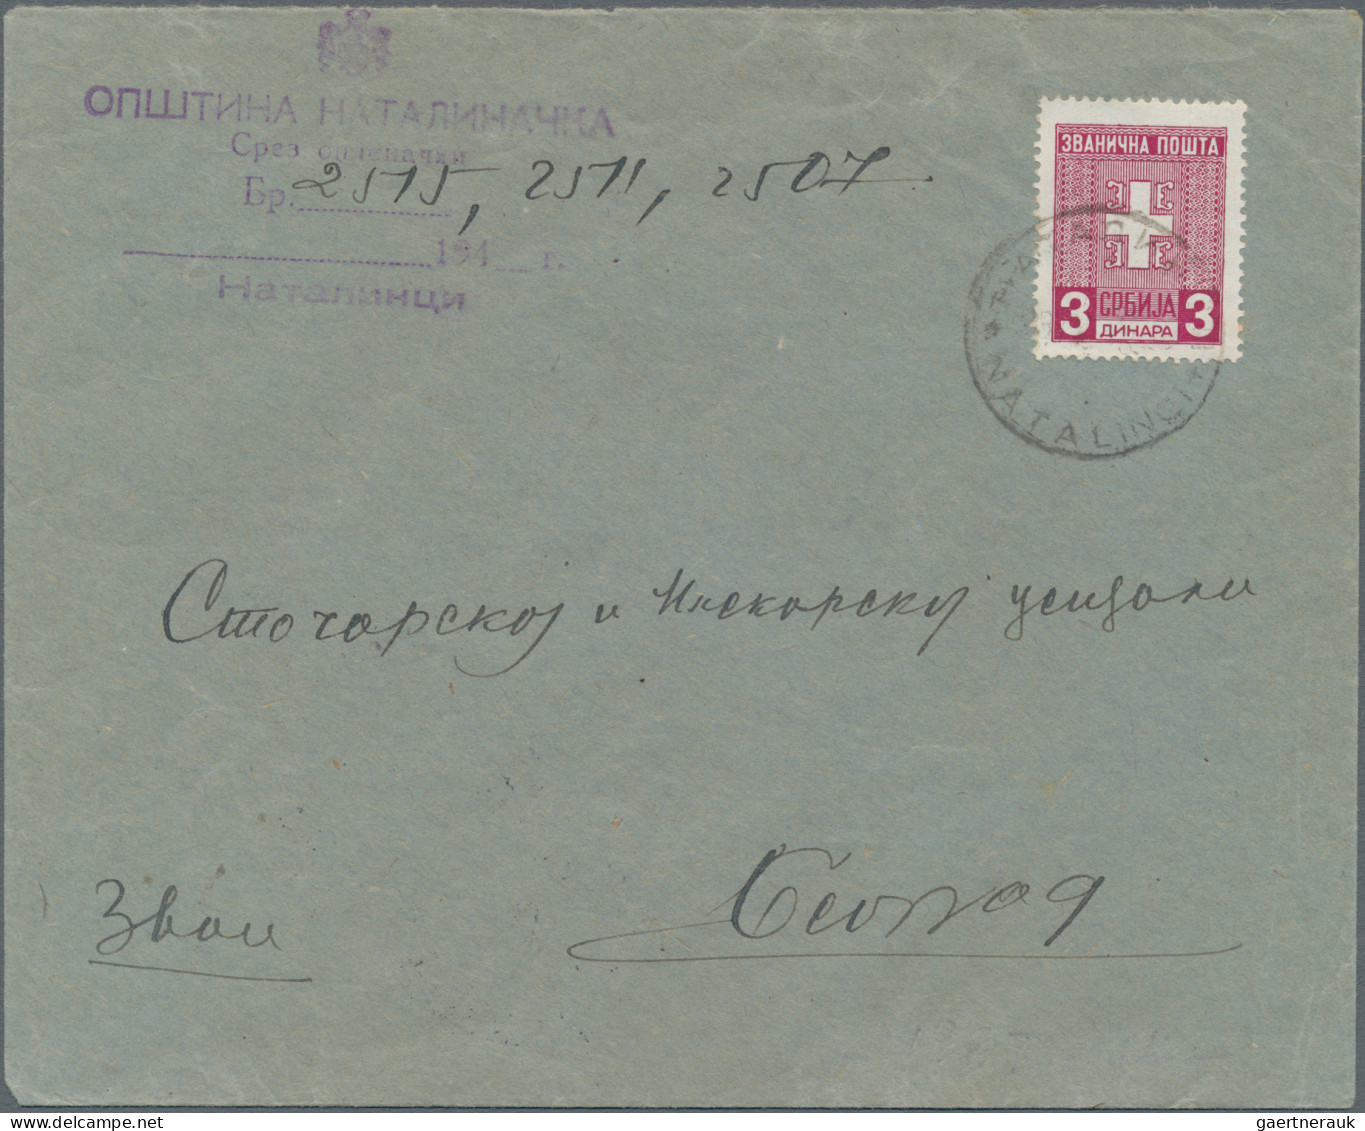 Dt. Besetzung II WK - Serbien: 1941/1943, Partie von acht Bedarfsbriefen incl. D